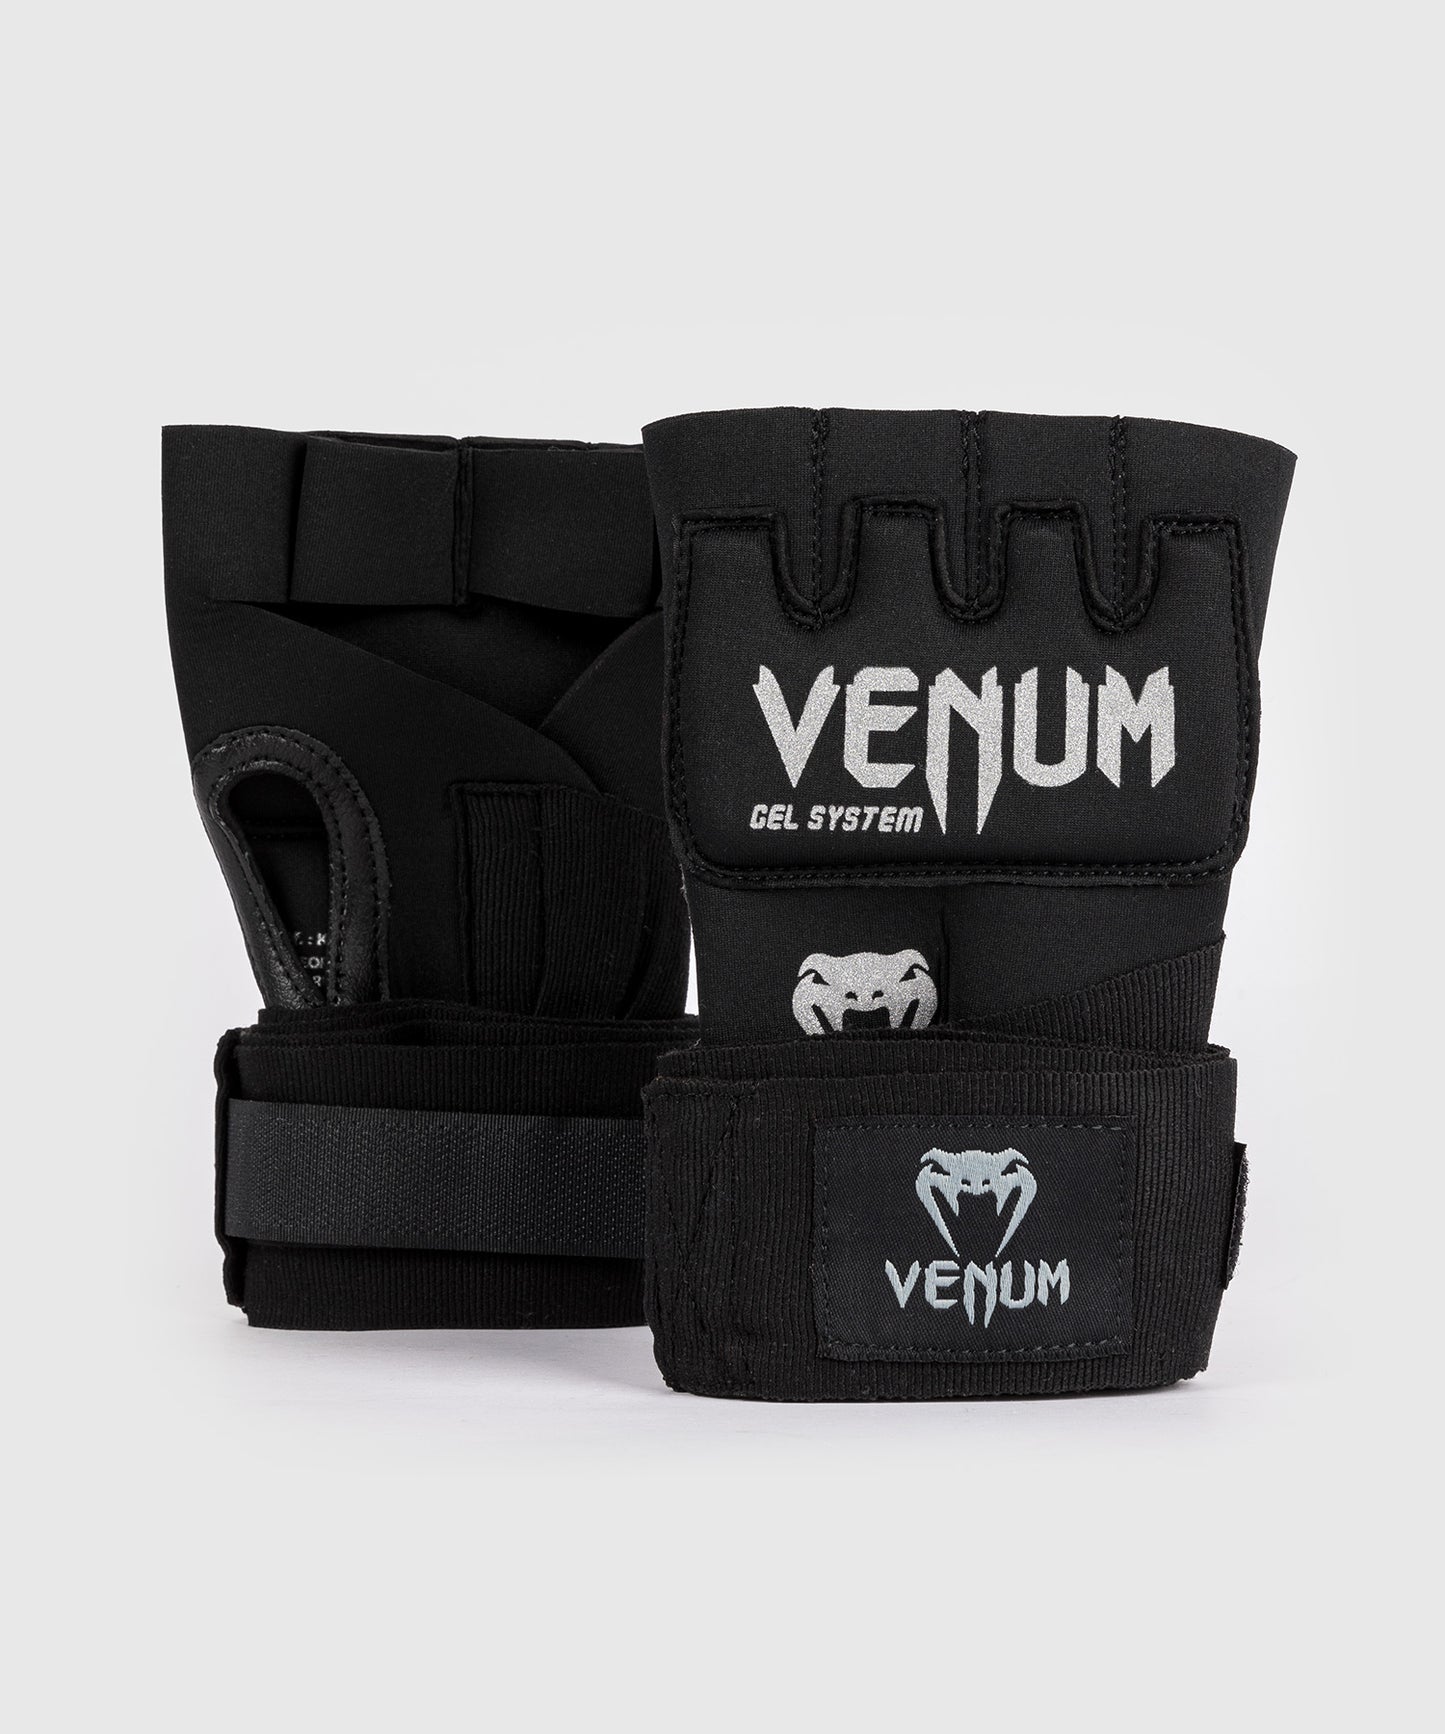 Venum Gel Kontact Handschuh Wraps - Schwarz/Silber